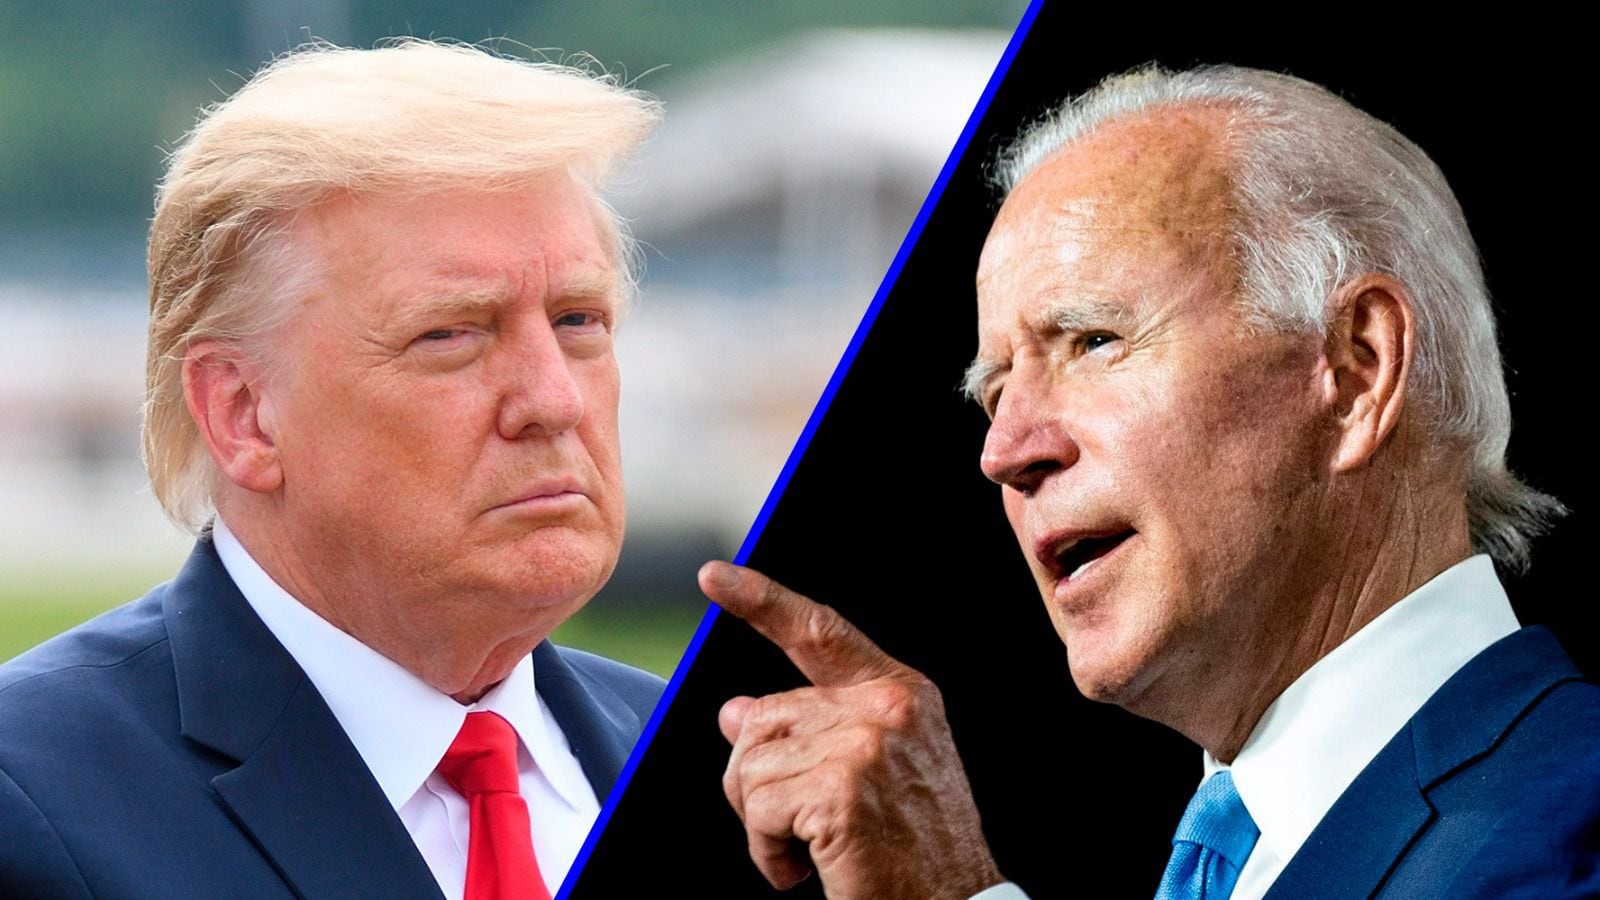 El presidente Joe Biden y Donald Trump se enfrentarán en el primer debate presidencial del ciclo electoral de 2024.